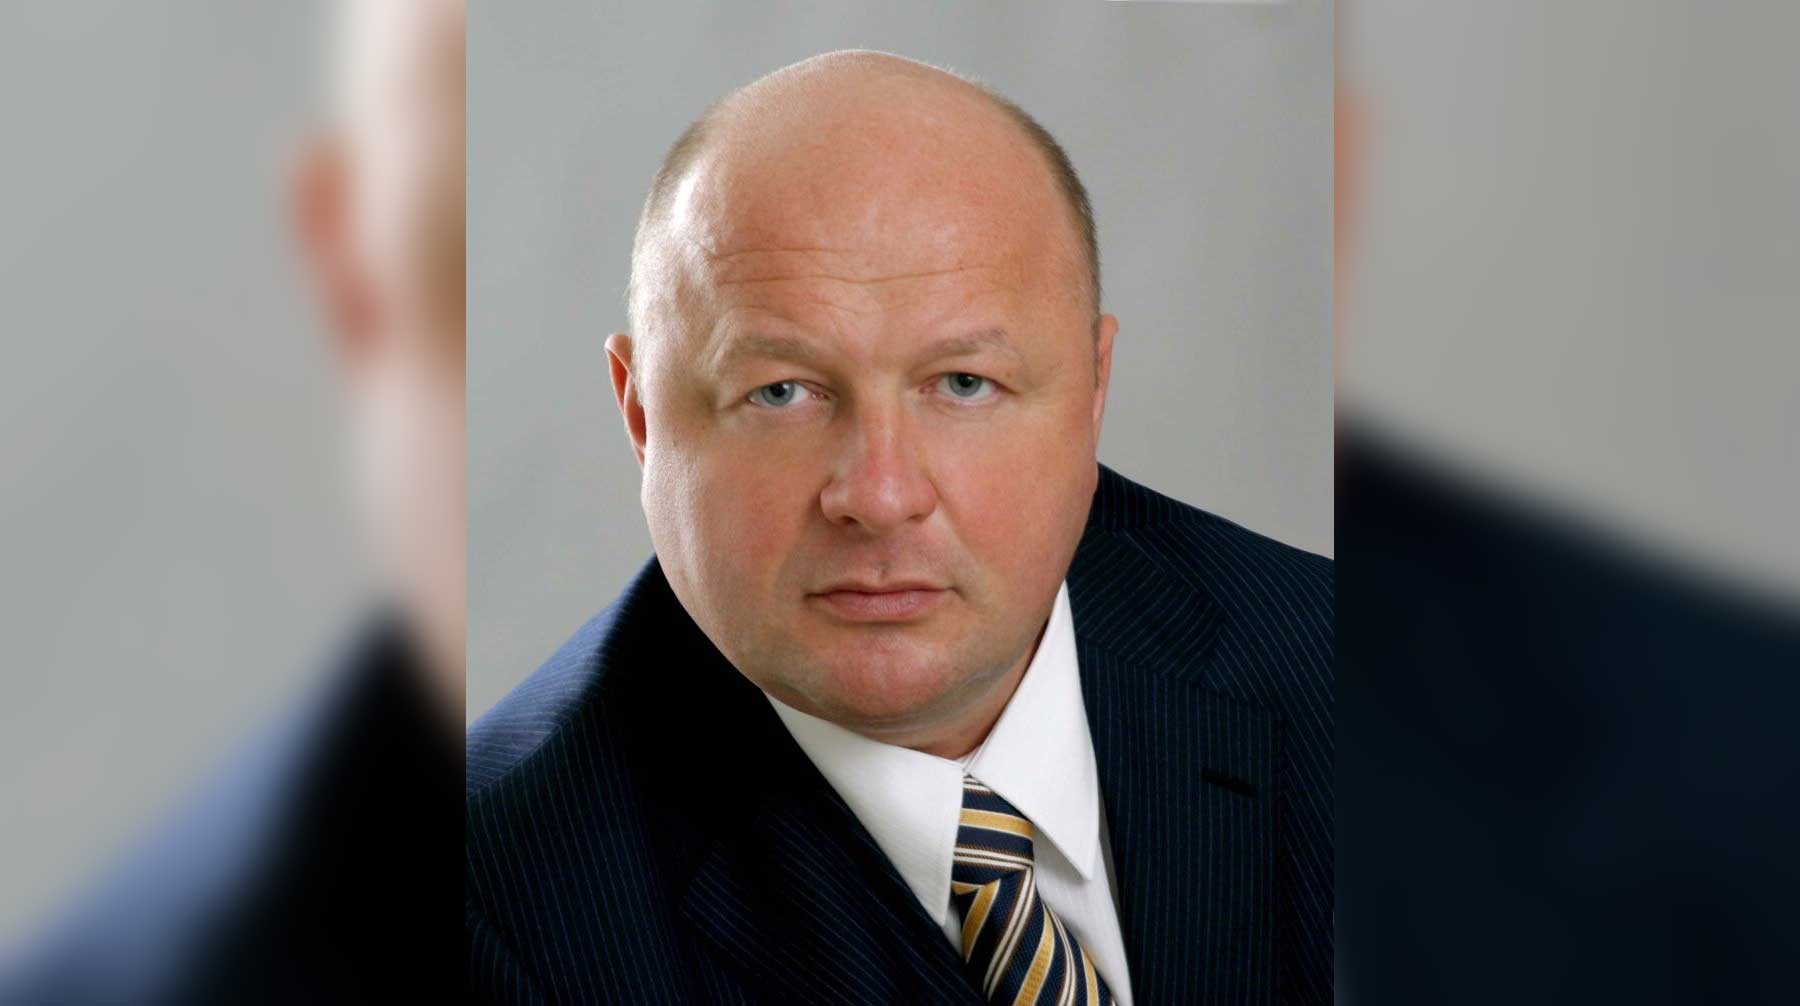 Гендиректор юридической компании признал, что оказывал услуги автодилеру, но до 2014 года Игорь Тимошин